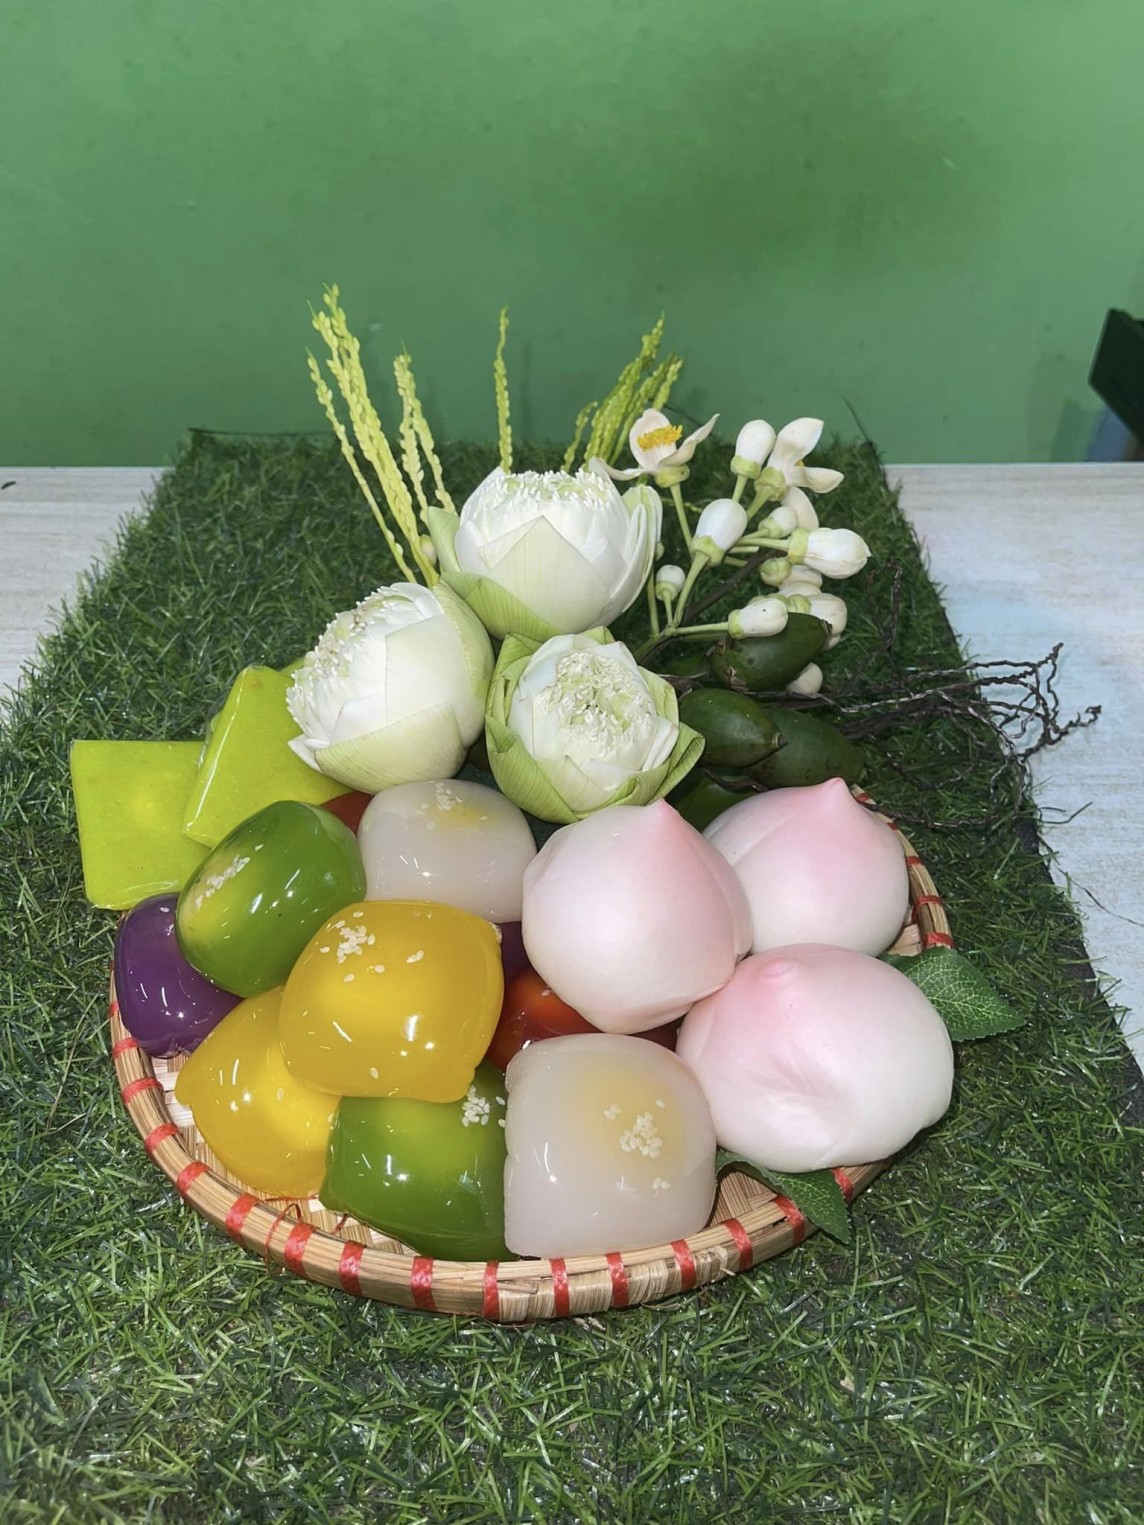 Thị trường dịp lễ Rằm tháng Giêng: Hàng hóa “hạ nhiệt”, thực phẩm chay sôi động trên chợ mạng